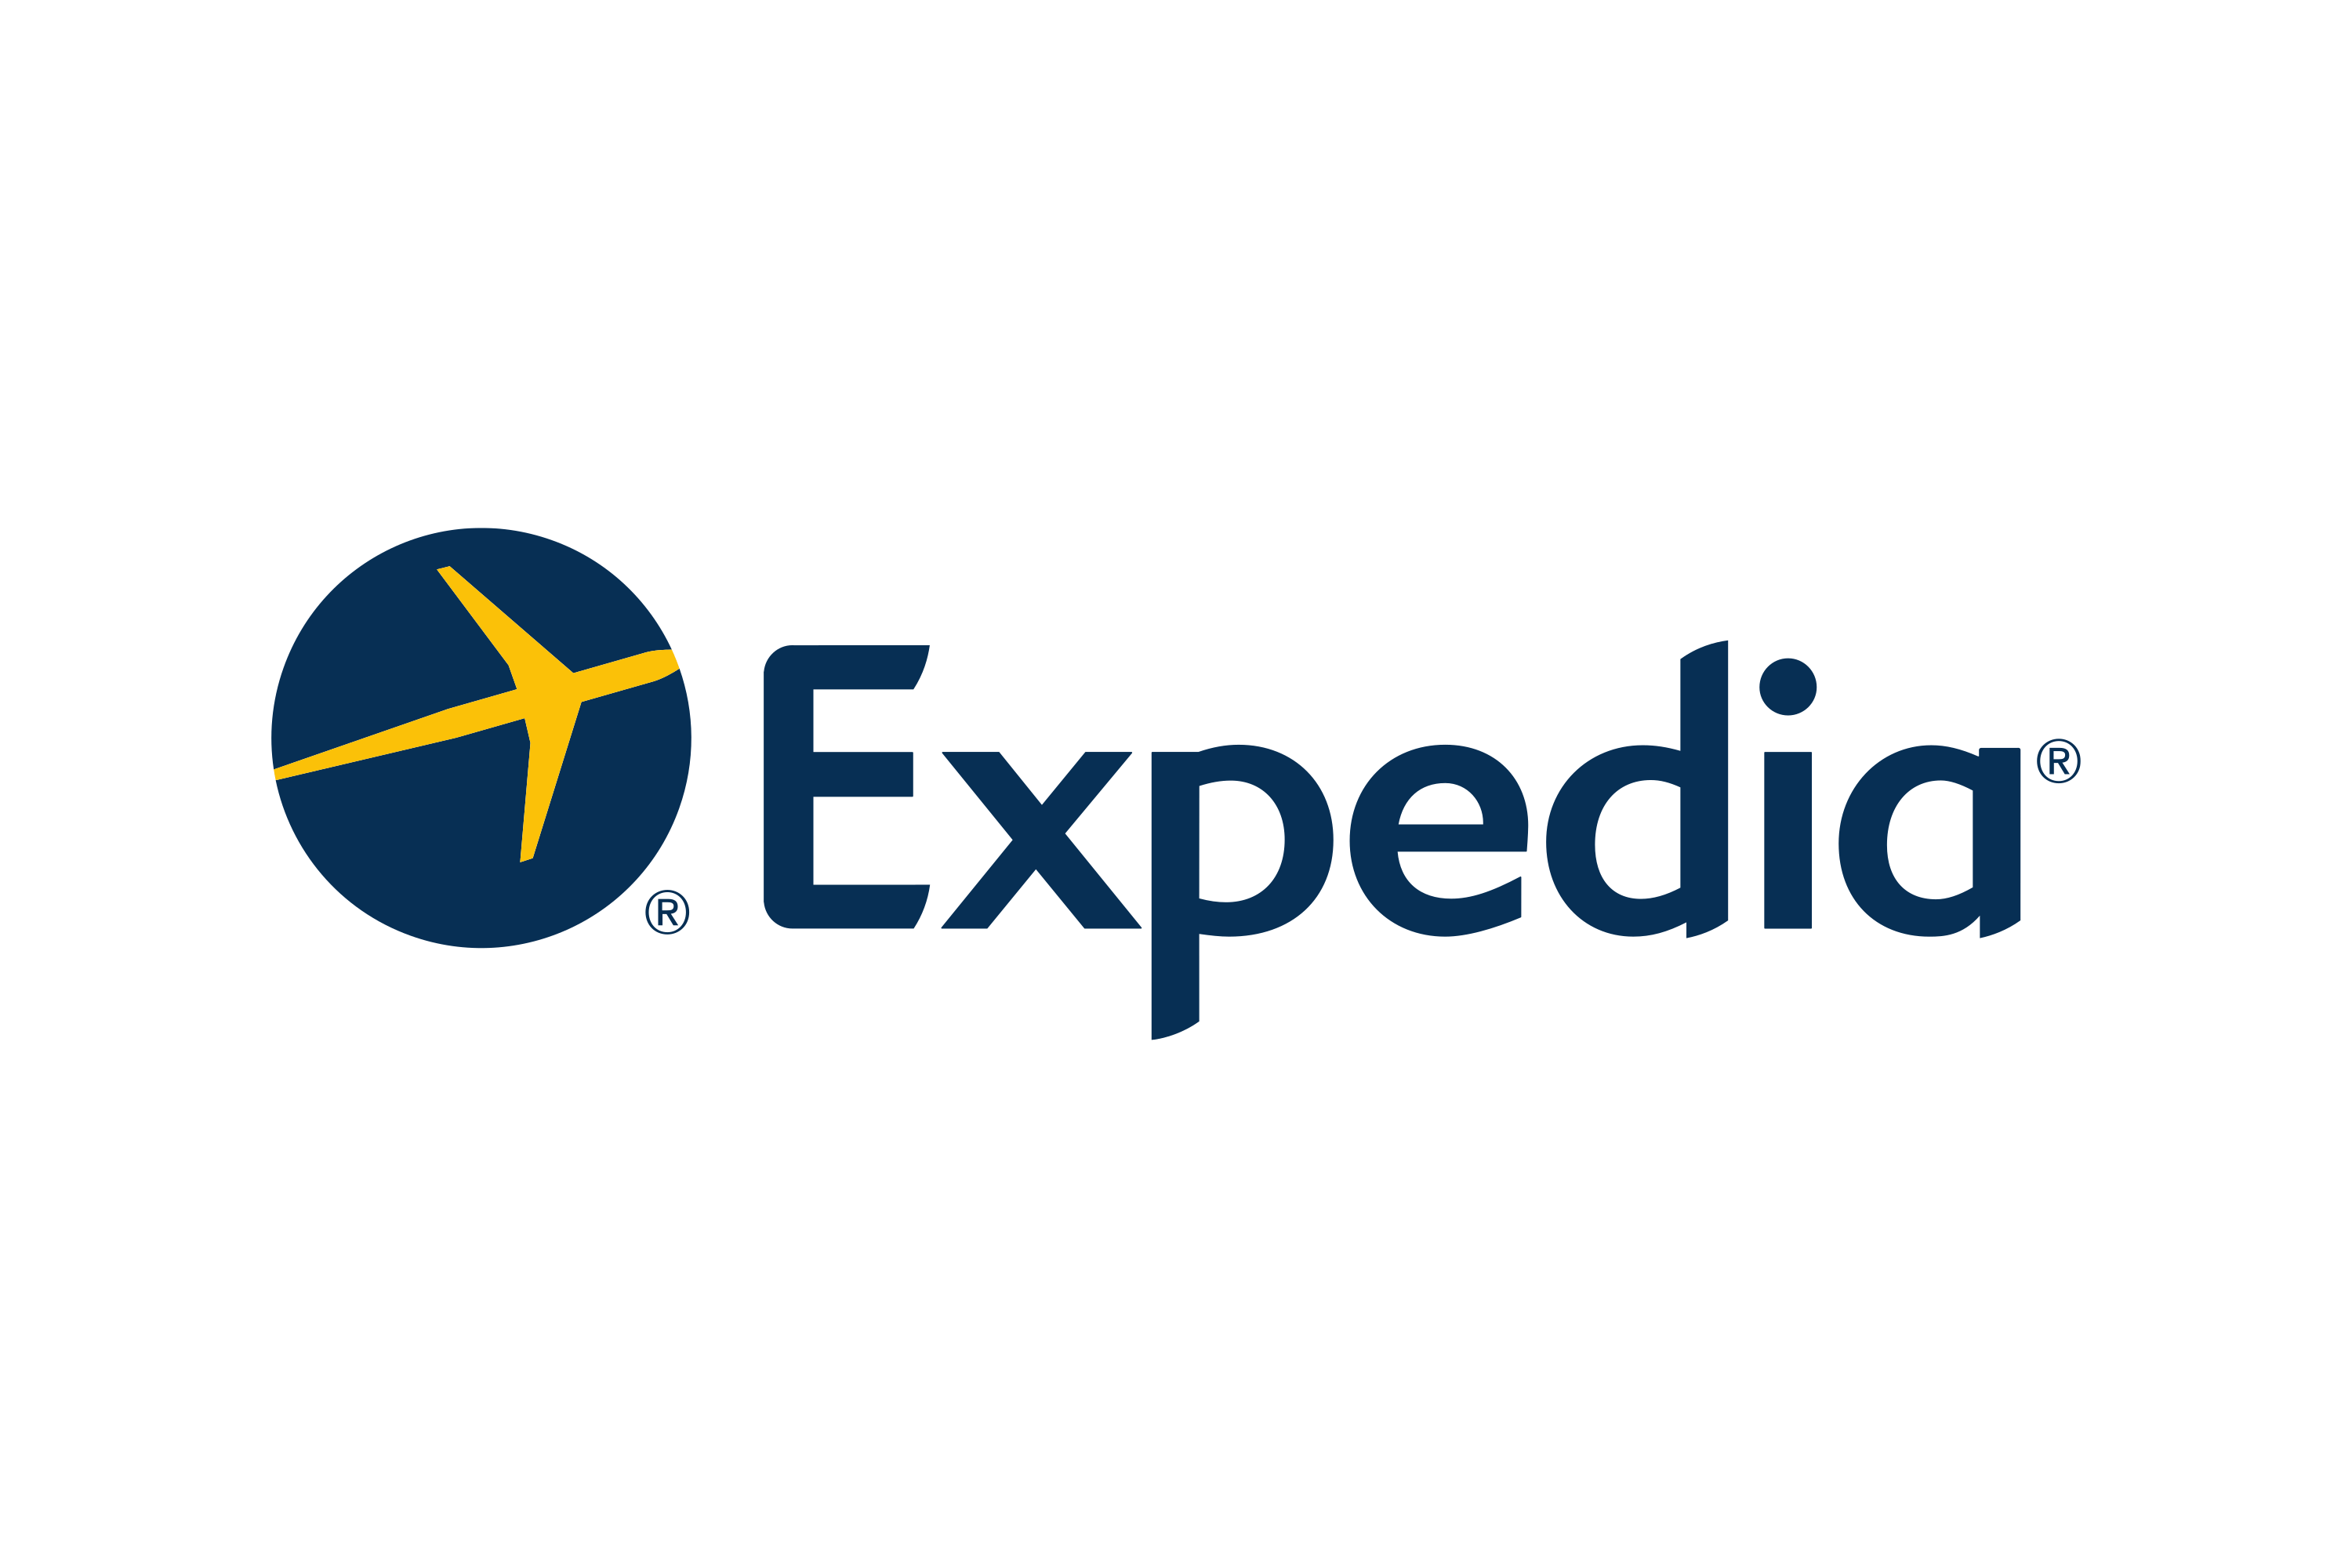 Expedia Logo expedia.com